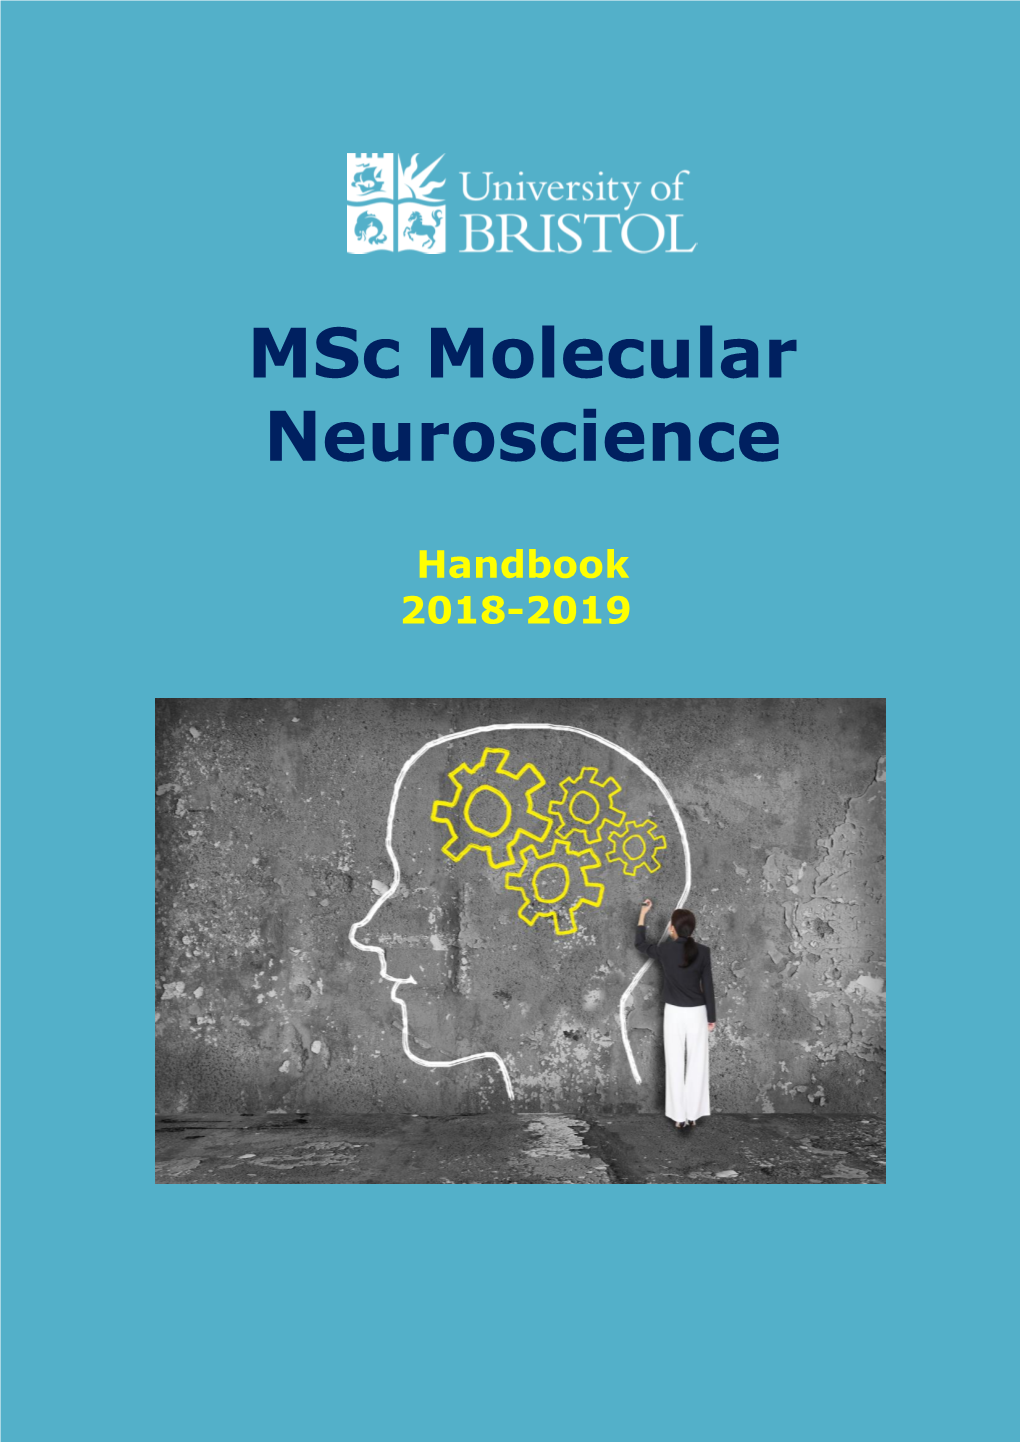 Msc in Molecular Neuroscience